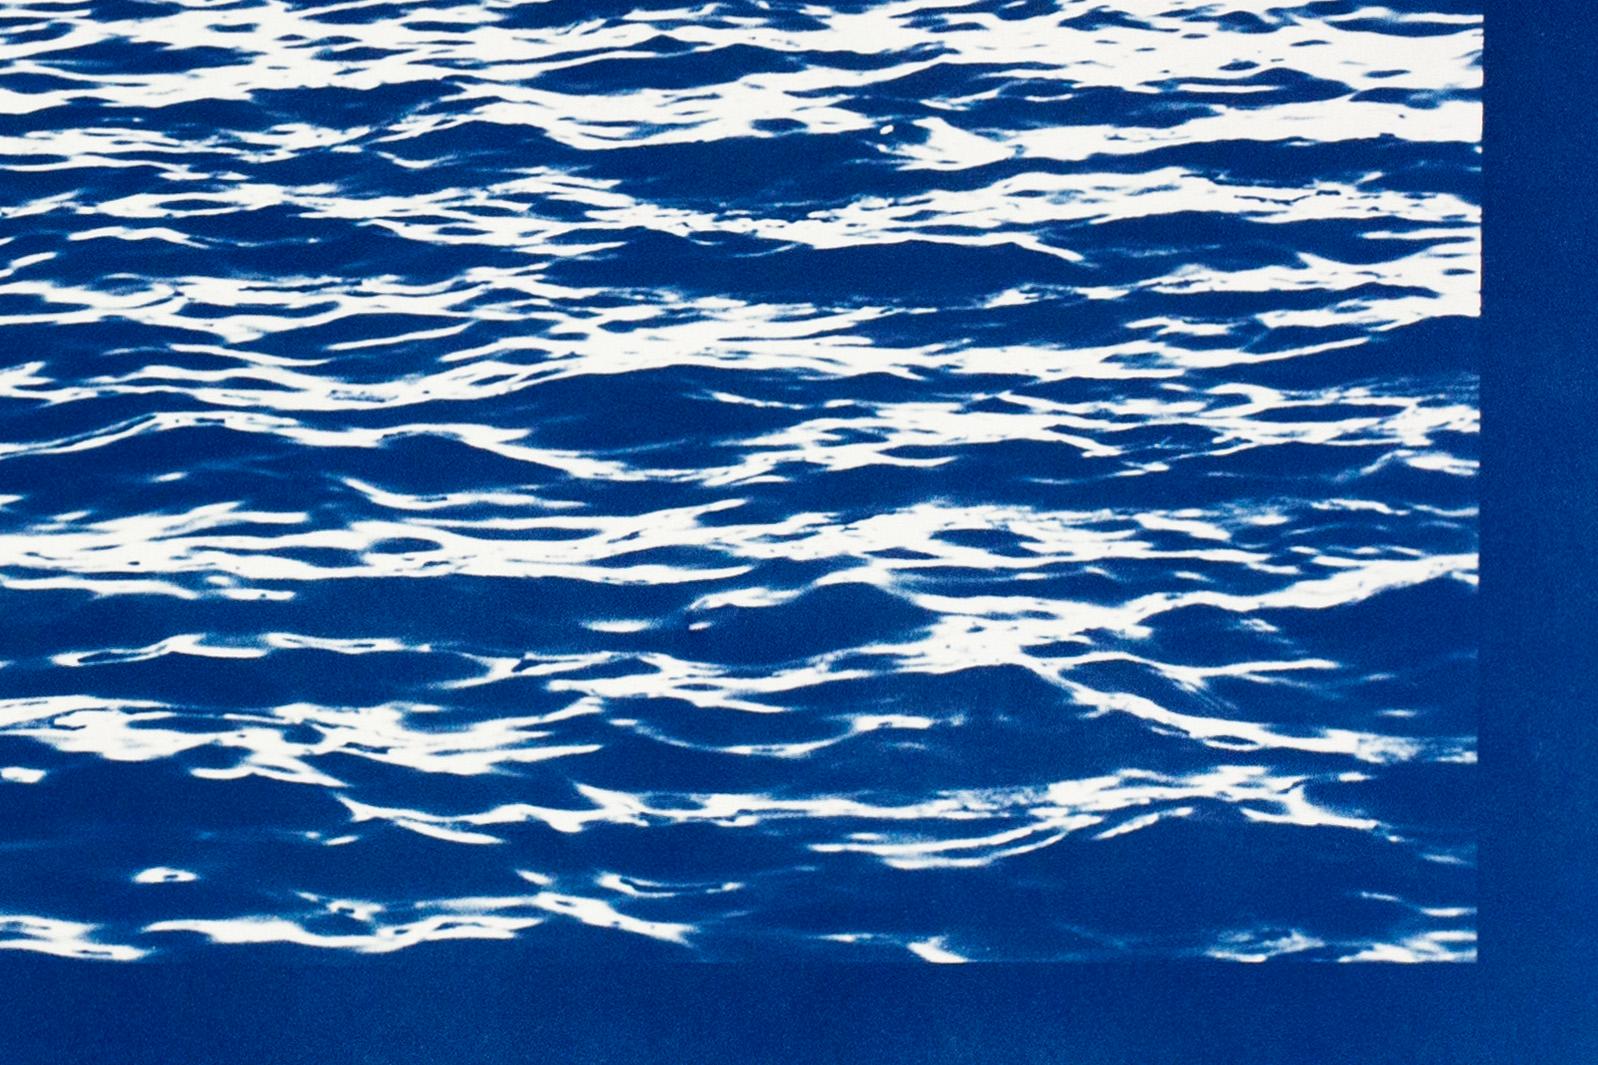 Mittelmeerblaue Meereswellen, handgefertigter Zyanotyp-Druck, 100x70cm, Kalkseelandschaft (Blau), Landscape Photograph, von Kind of Cyan